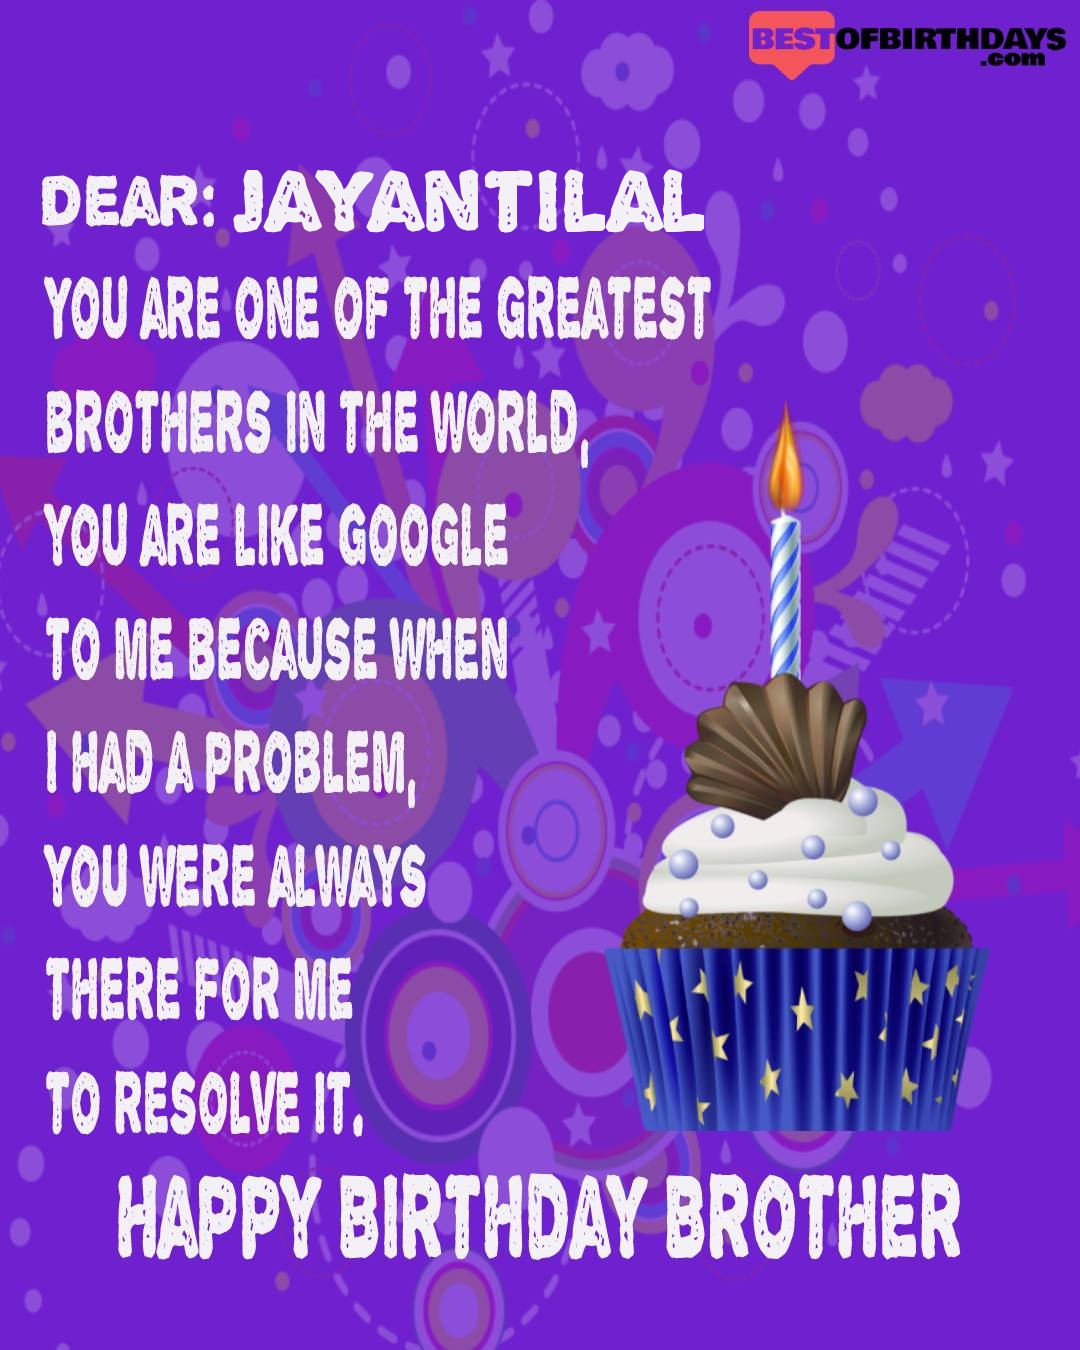 Happy birthday jayantilal bhai brother bro